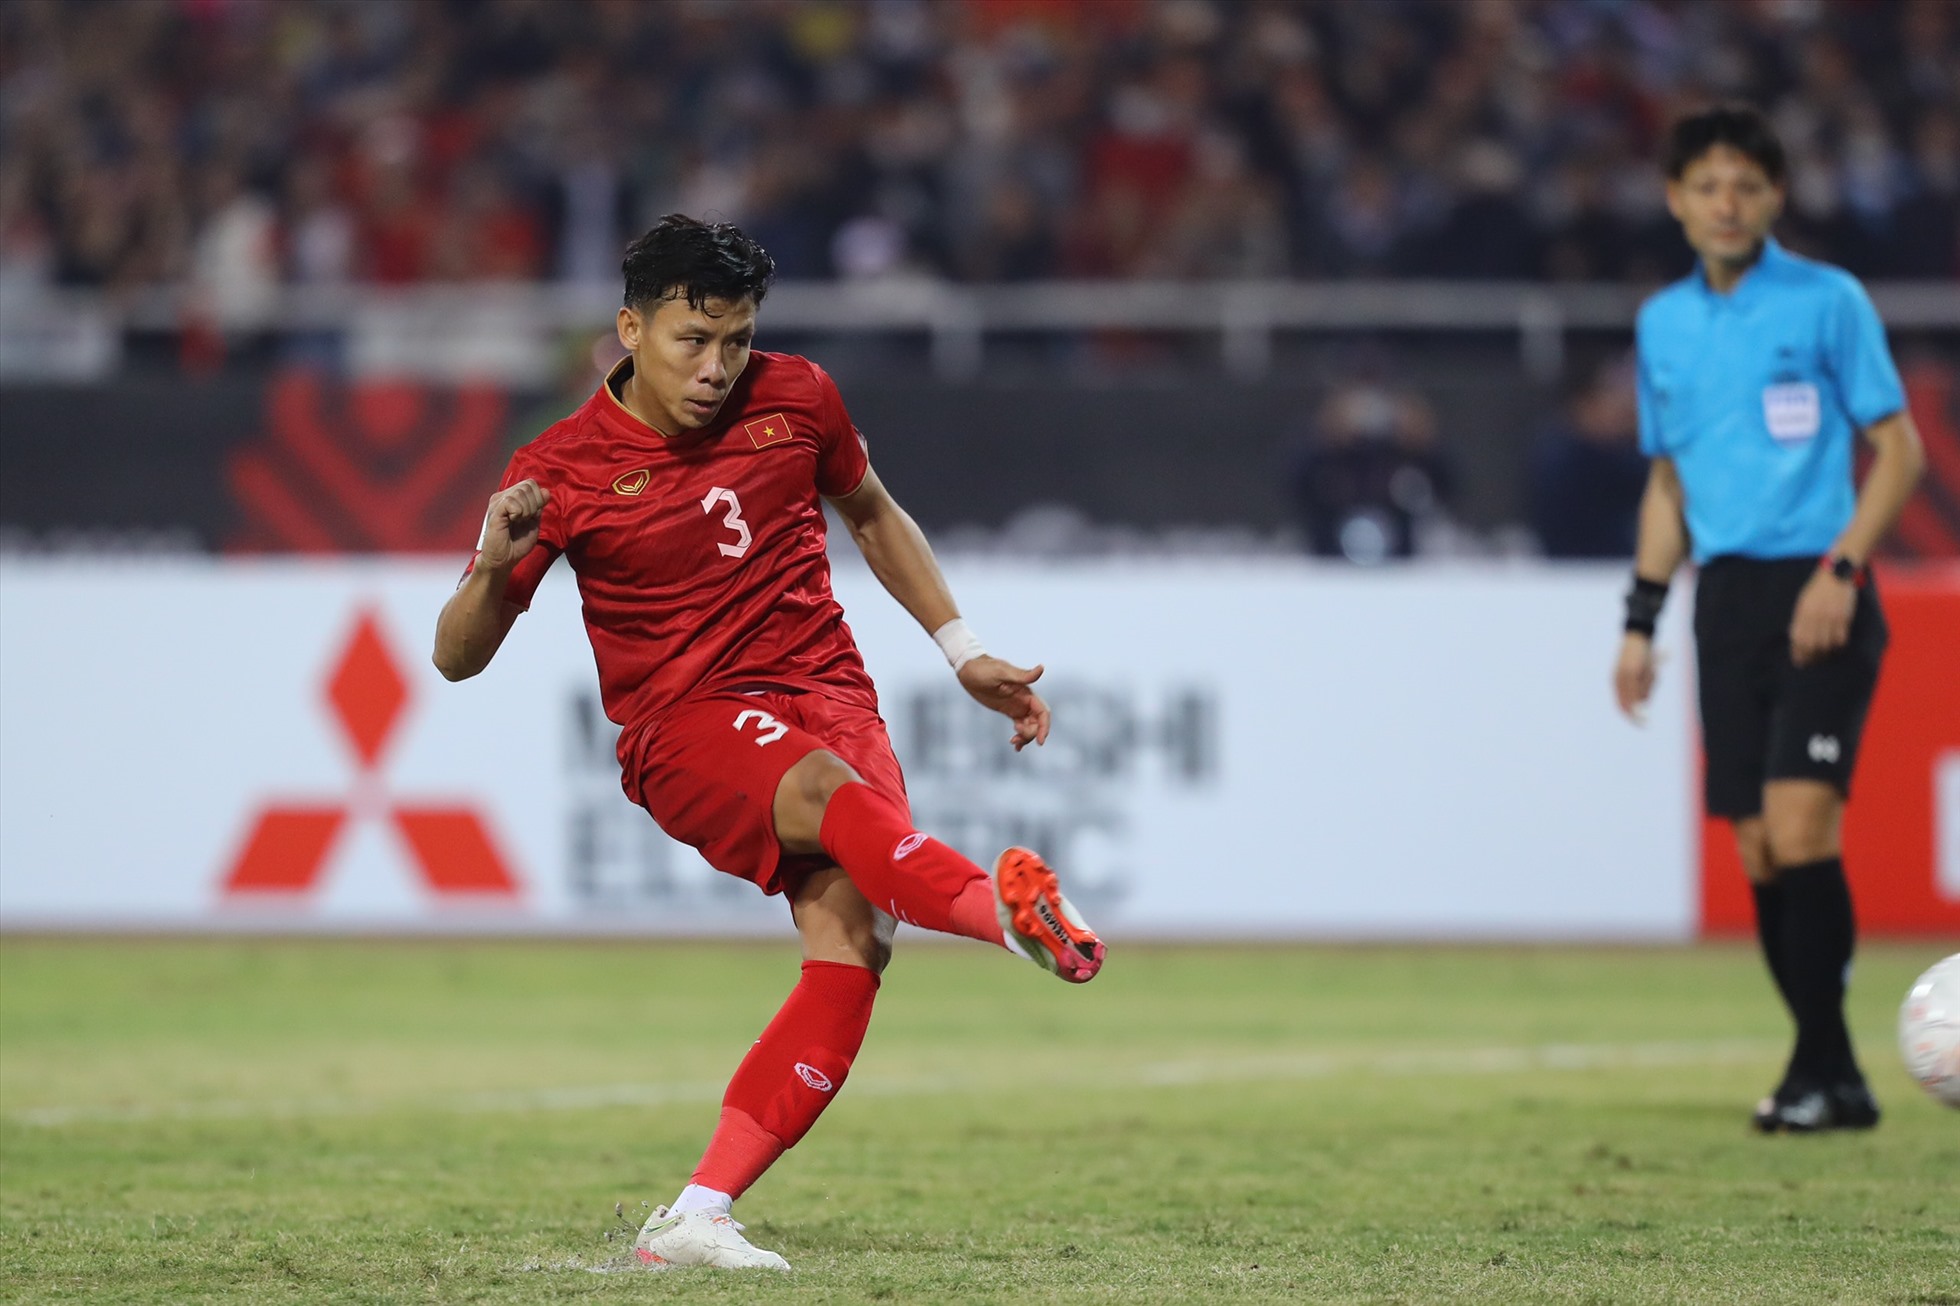 Trên chấm 11m, Quế Ngọc Hải không mắc sai lầm, ghi bàn thắng nâng tỉ số lên 2-0 cho đội tuyển Việt Nam.